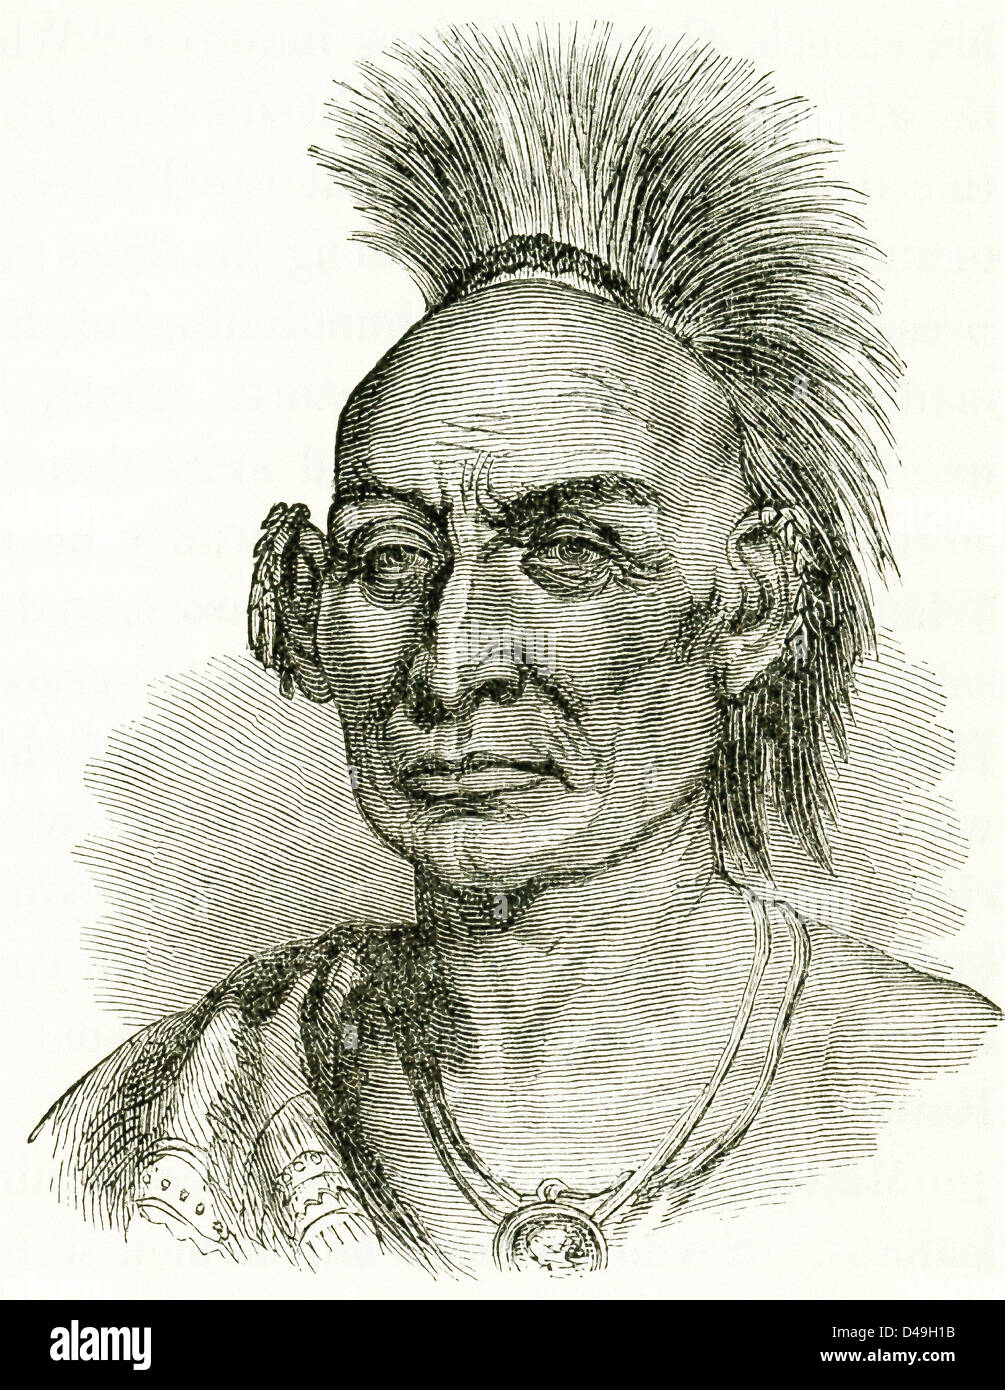 Black Hawk war Anführer und Krieger des Stammes Sauk-Indianer. Im Krieg von 1812 kämpfte er mit den Briten. Stockfoto